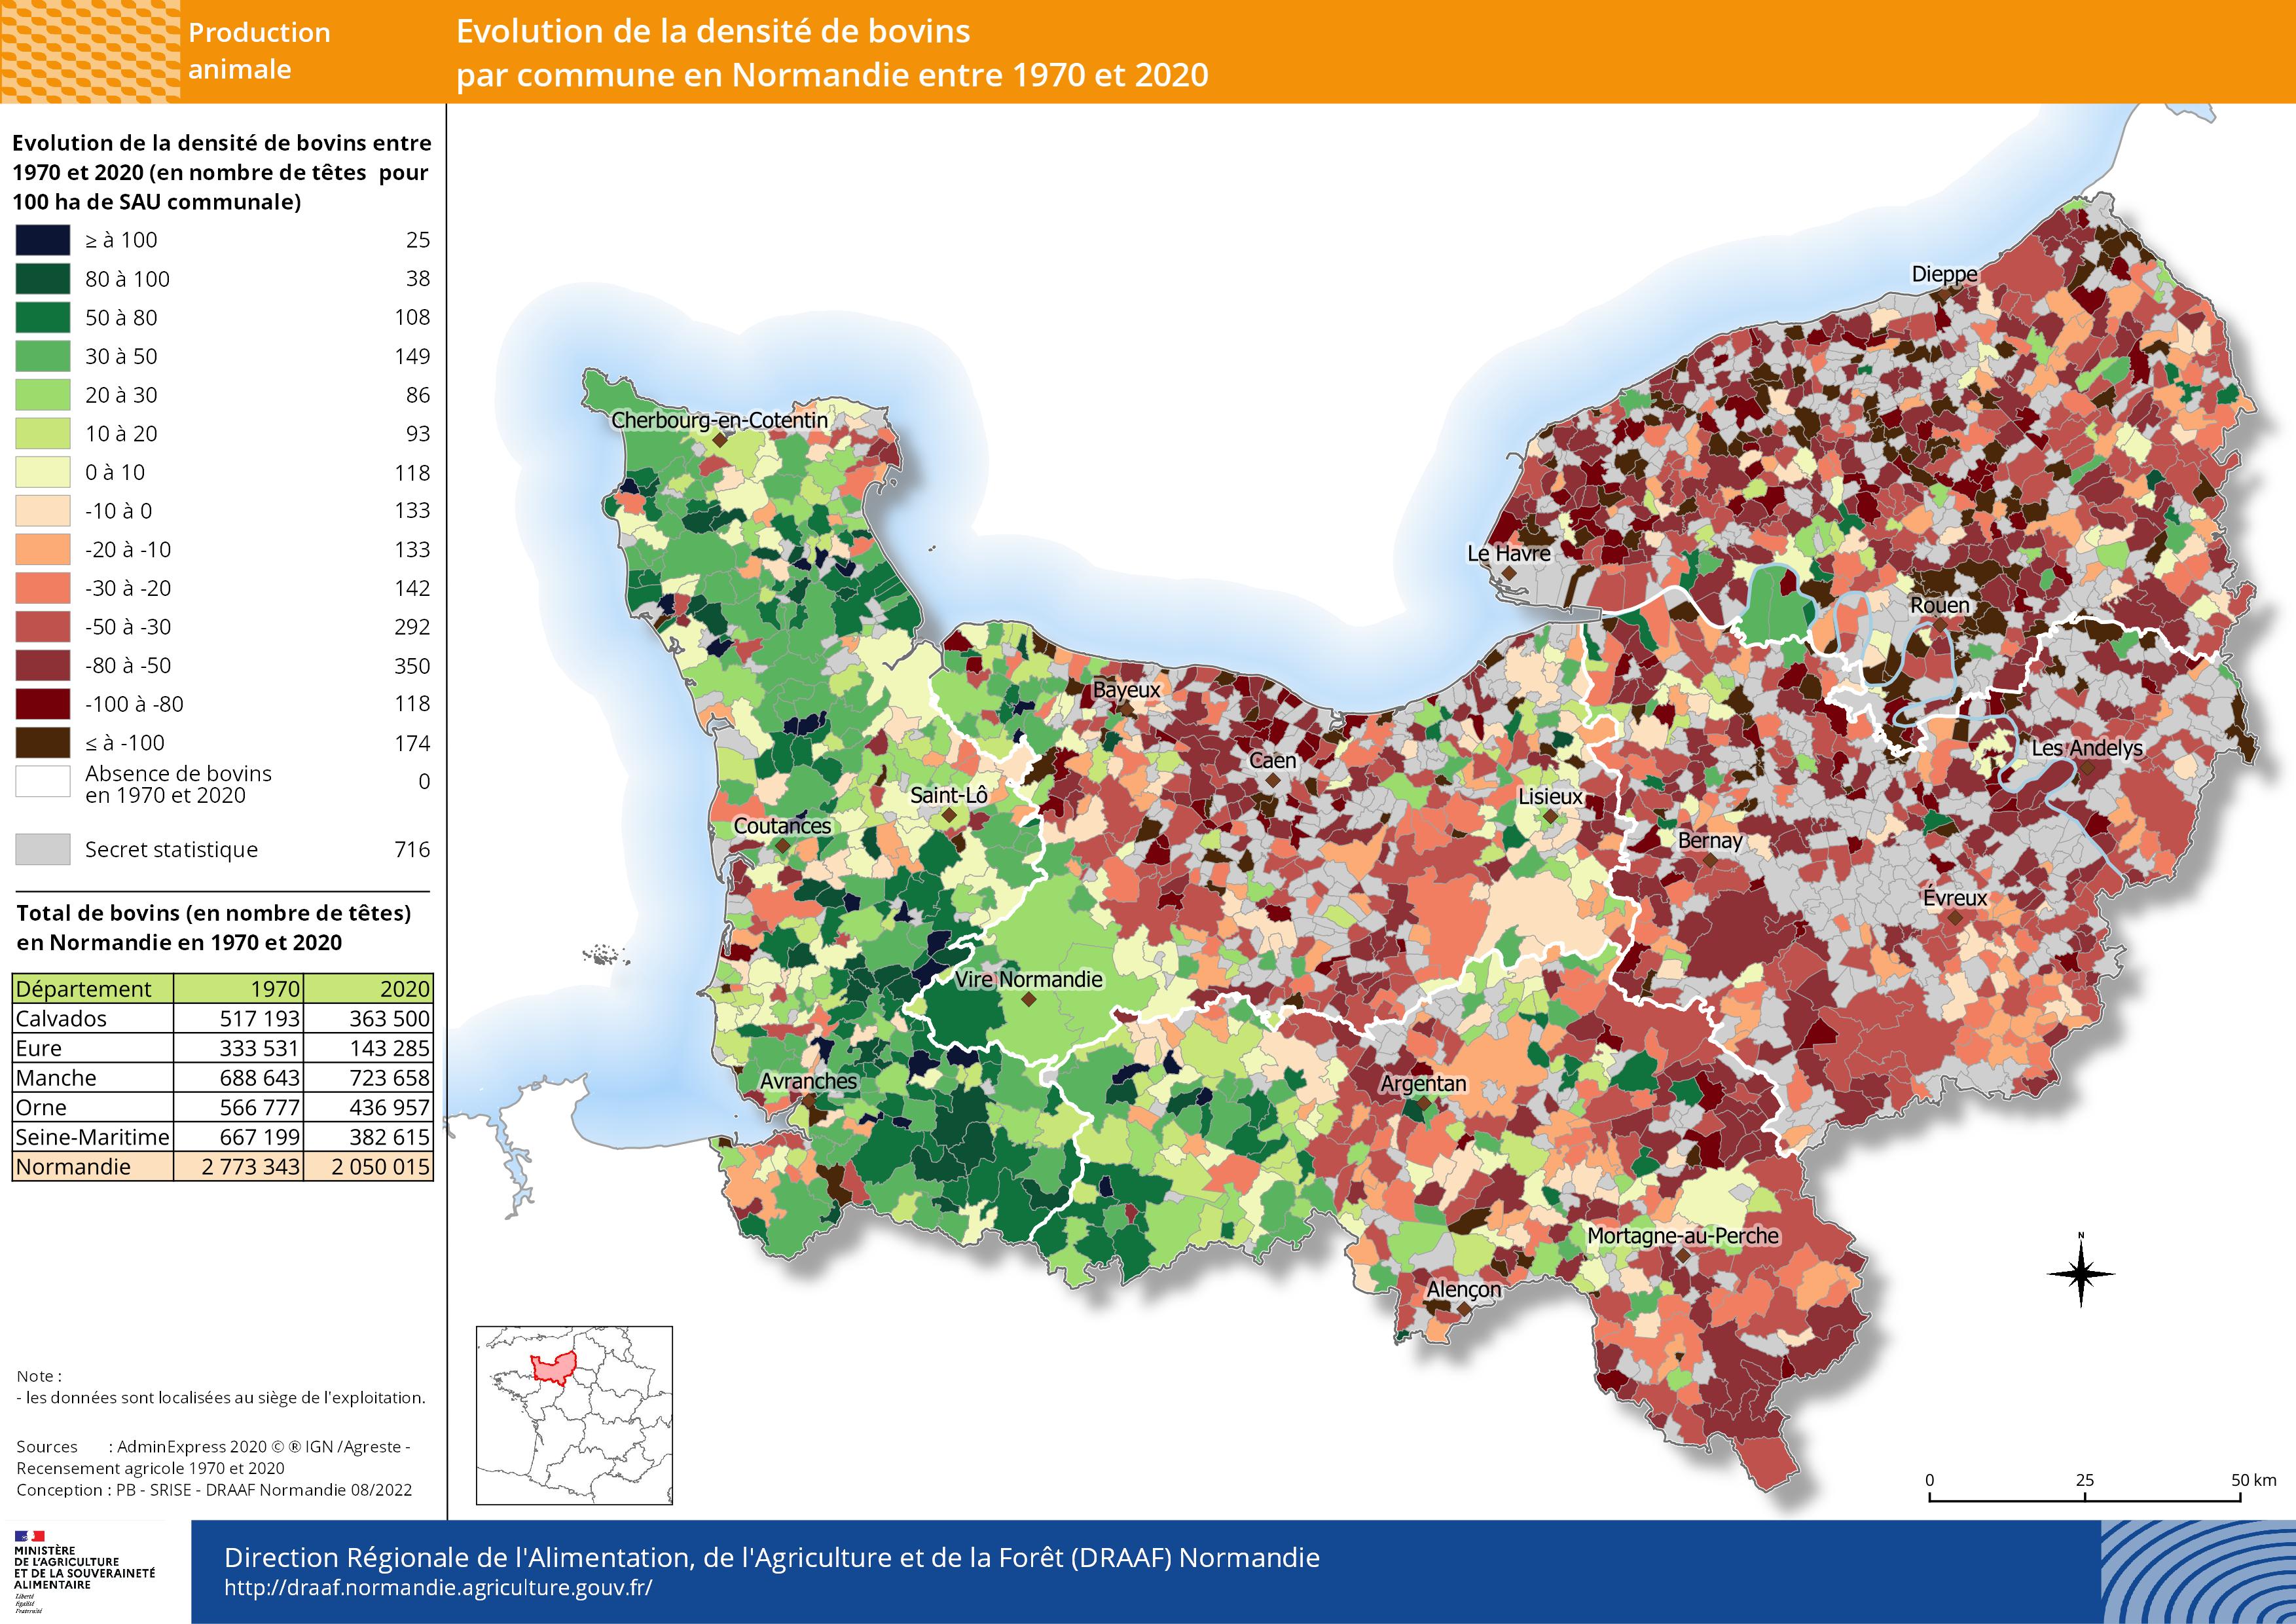 jeu de données - évolution de la densité de bovins par commune en Normandie entre 1970 et 2020